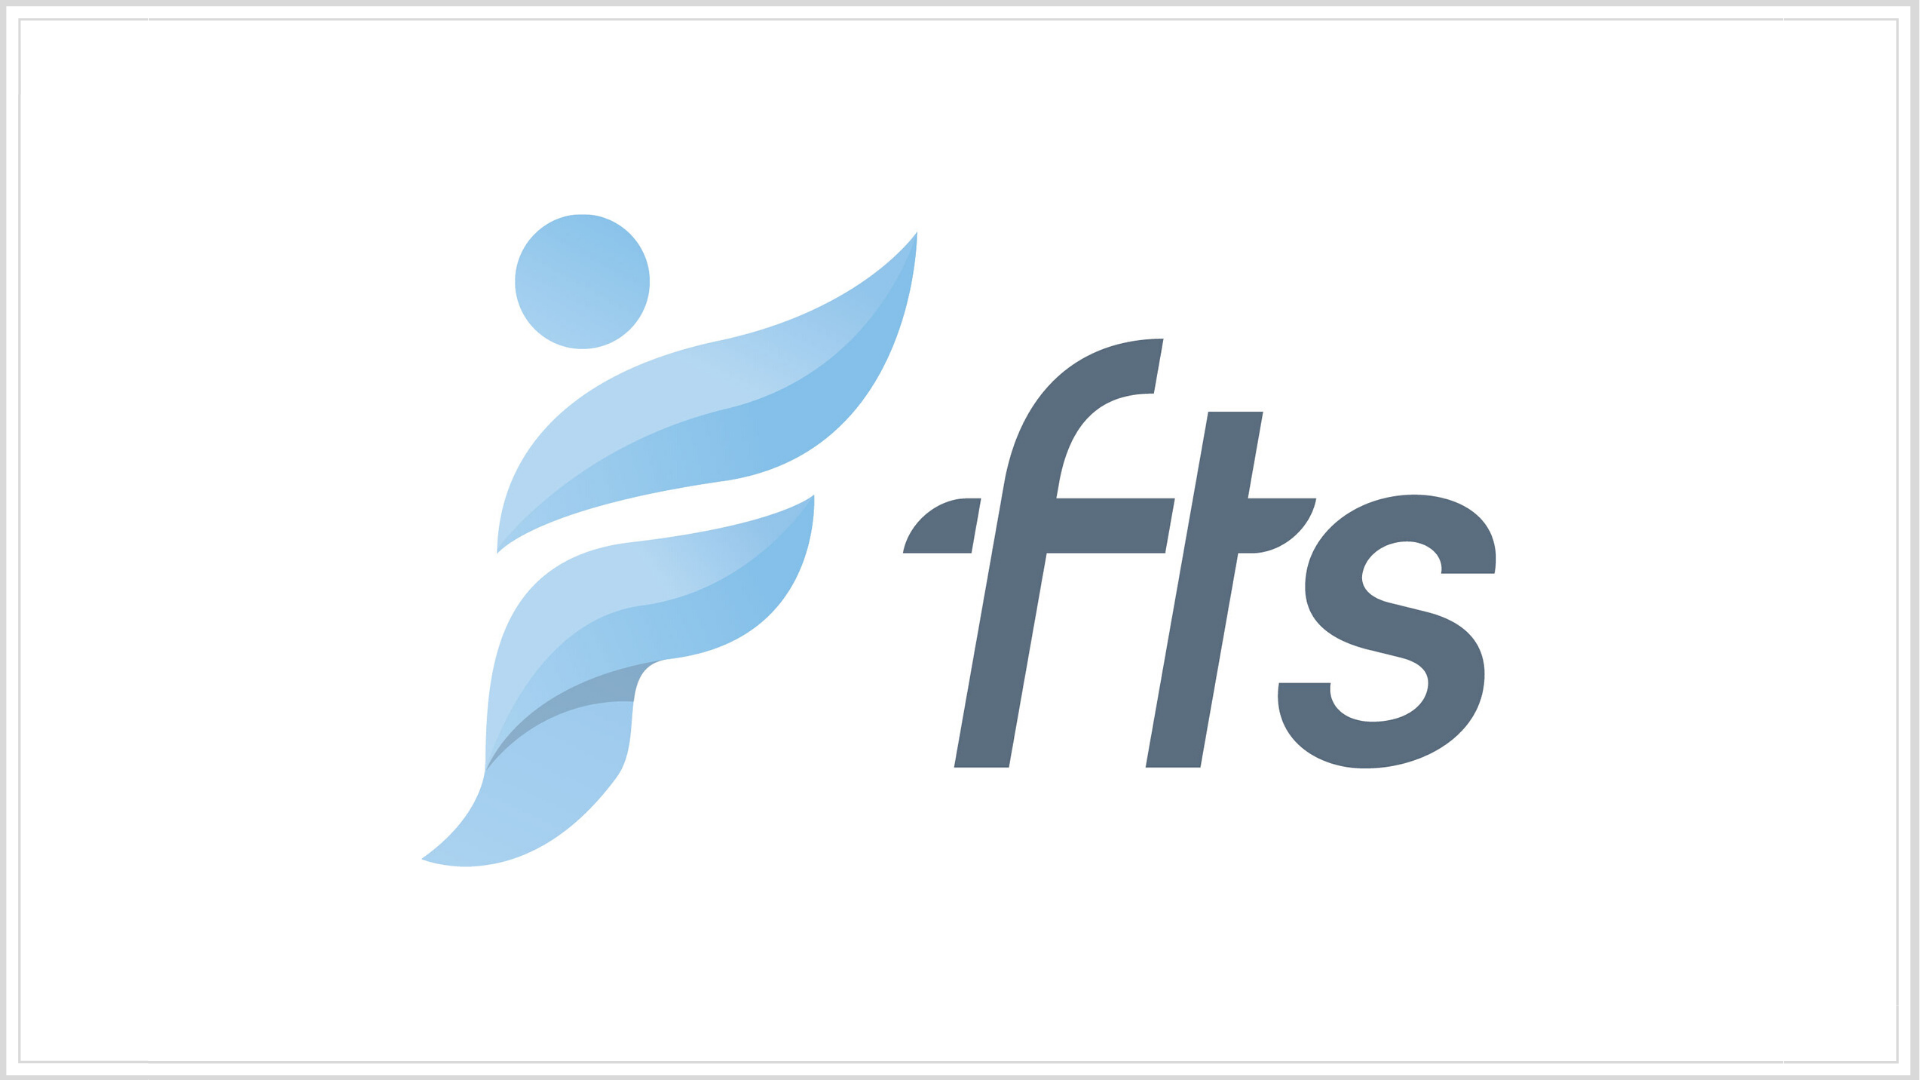 FTS – Logo (16 x 9)